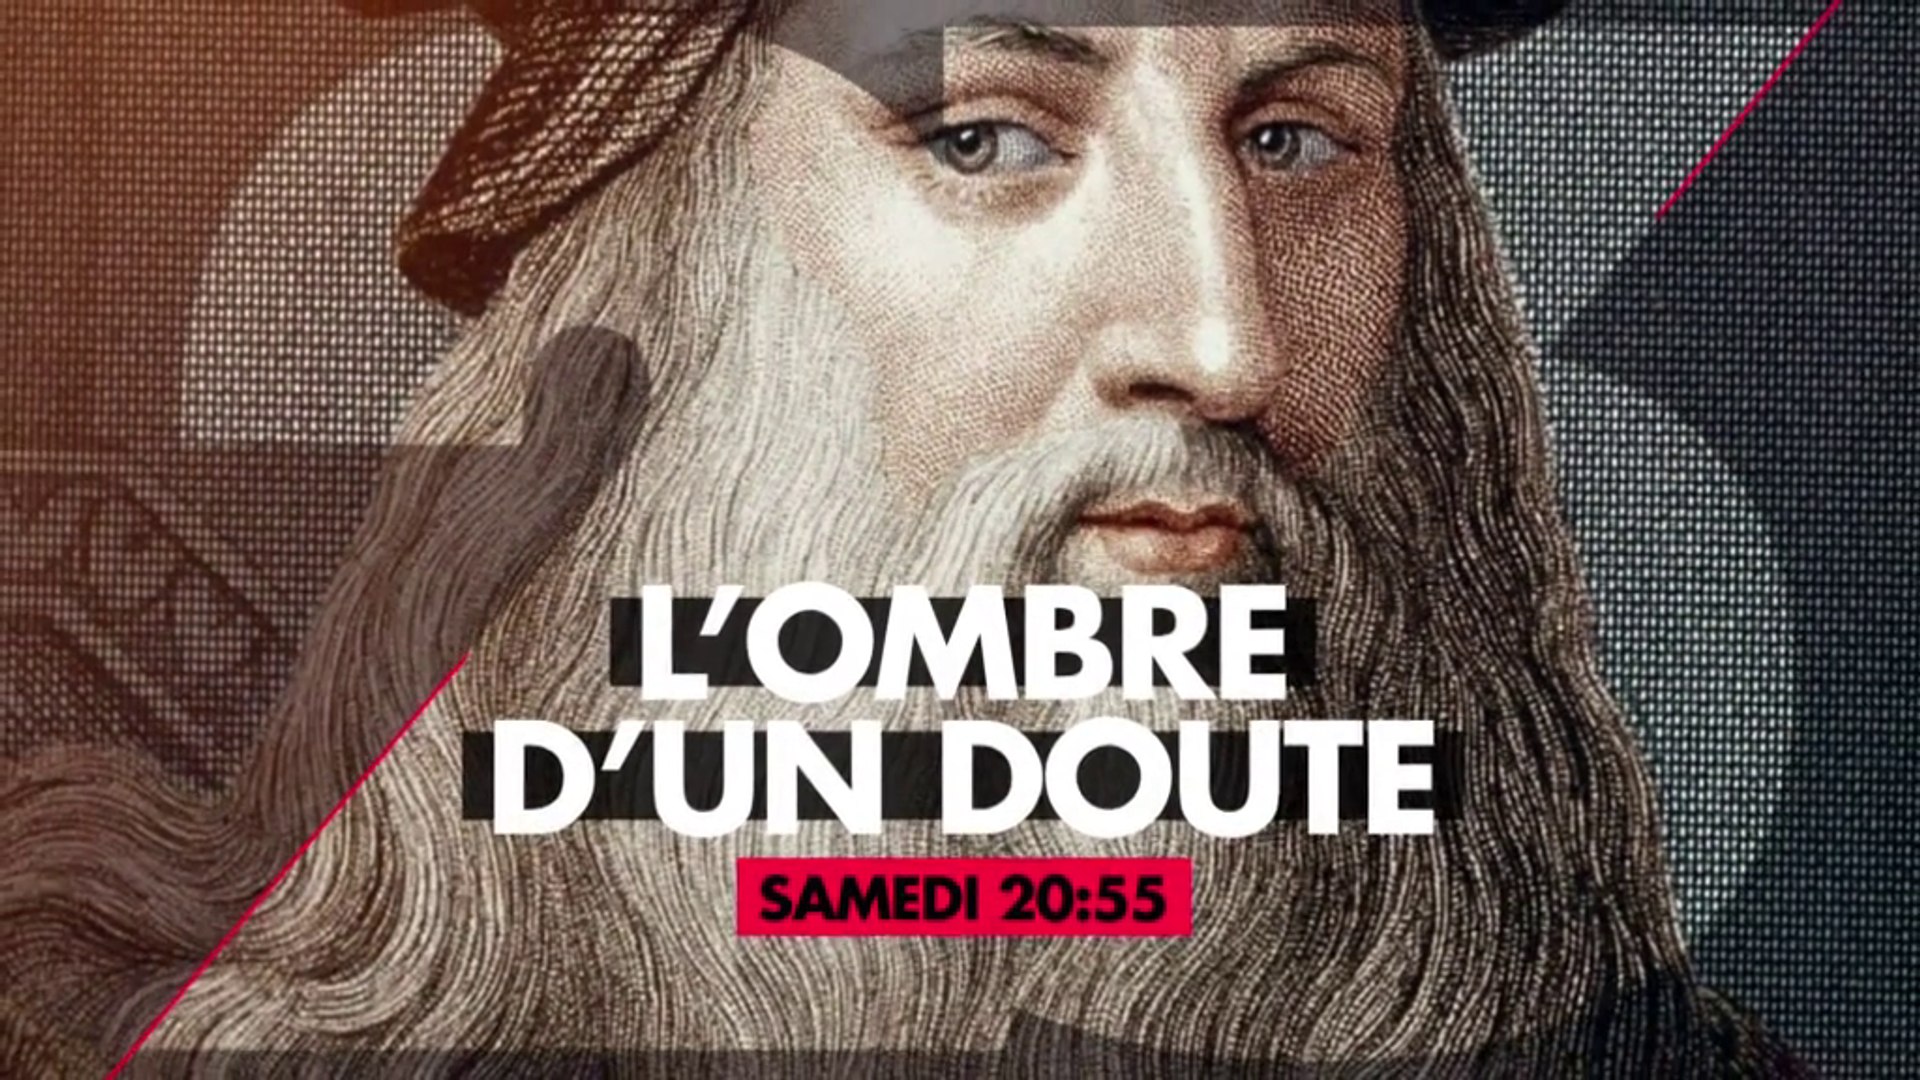 L'OMBRE D'UN DOUTE - Léonard de Vinci, l'homme du mystère - 21 07 18 -  Vidéo Dailymotion